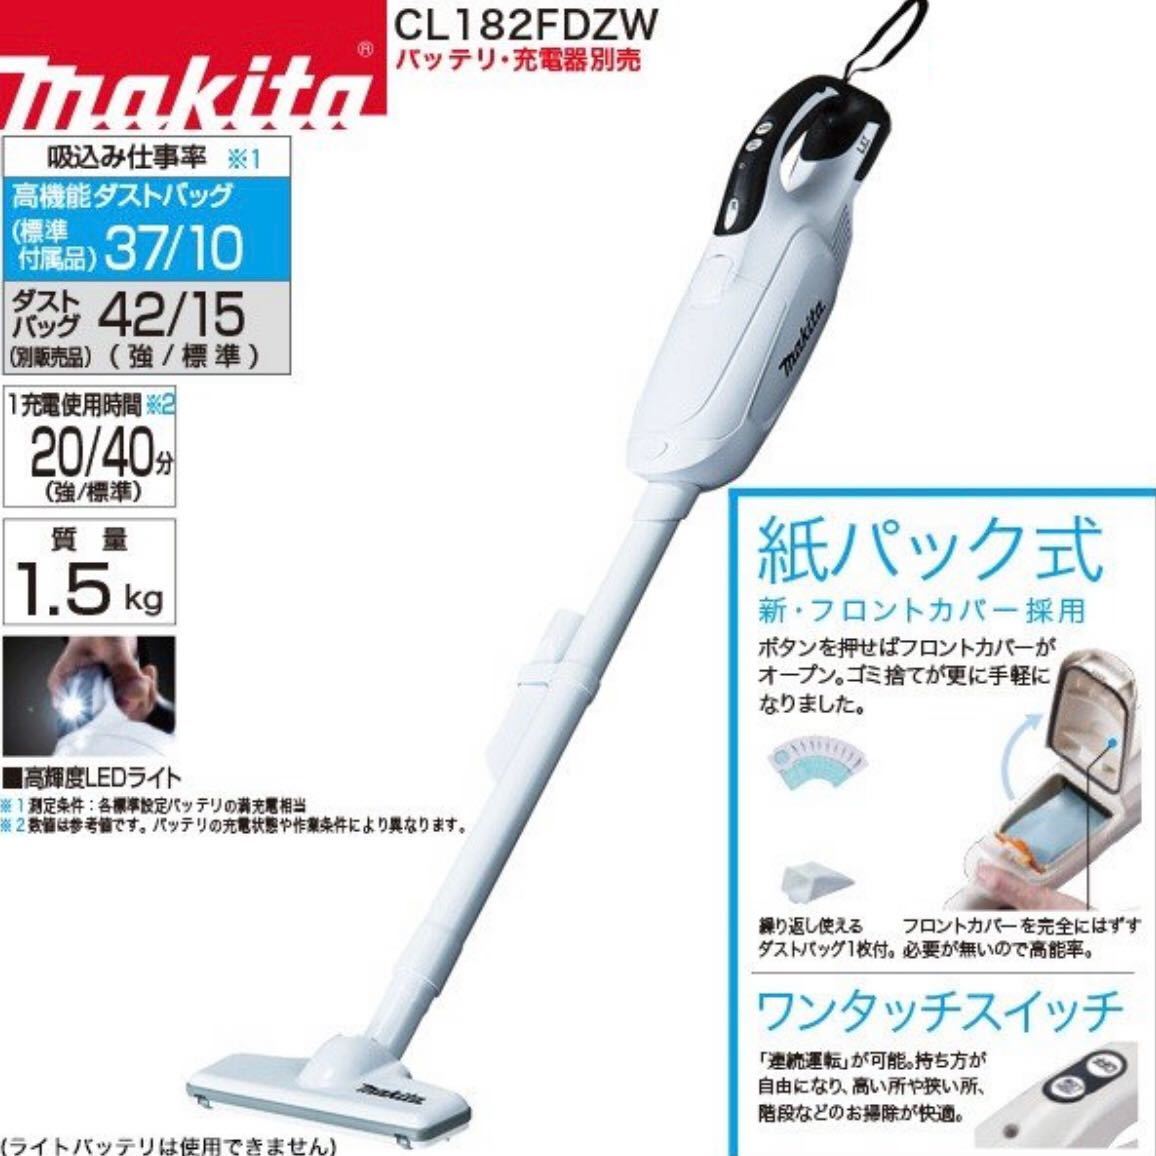 新品 上位モデル makita マキタ 18V 充電式 コードレス 掃除機 ハンディクリーナー CL182FDZW 本体のみ 